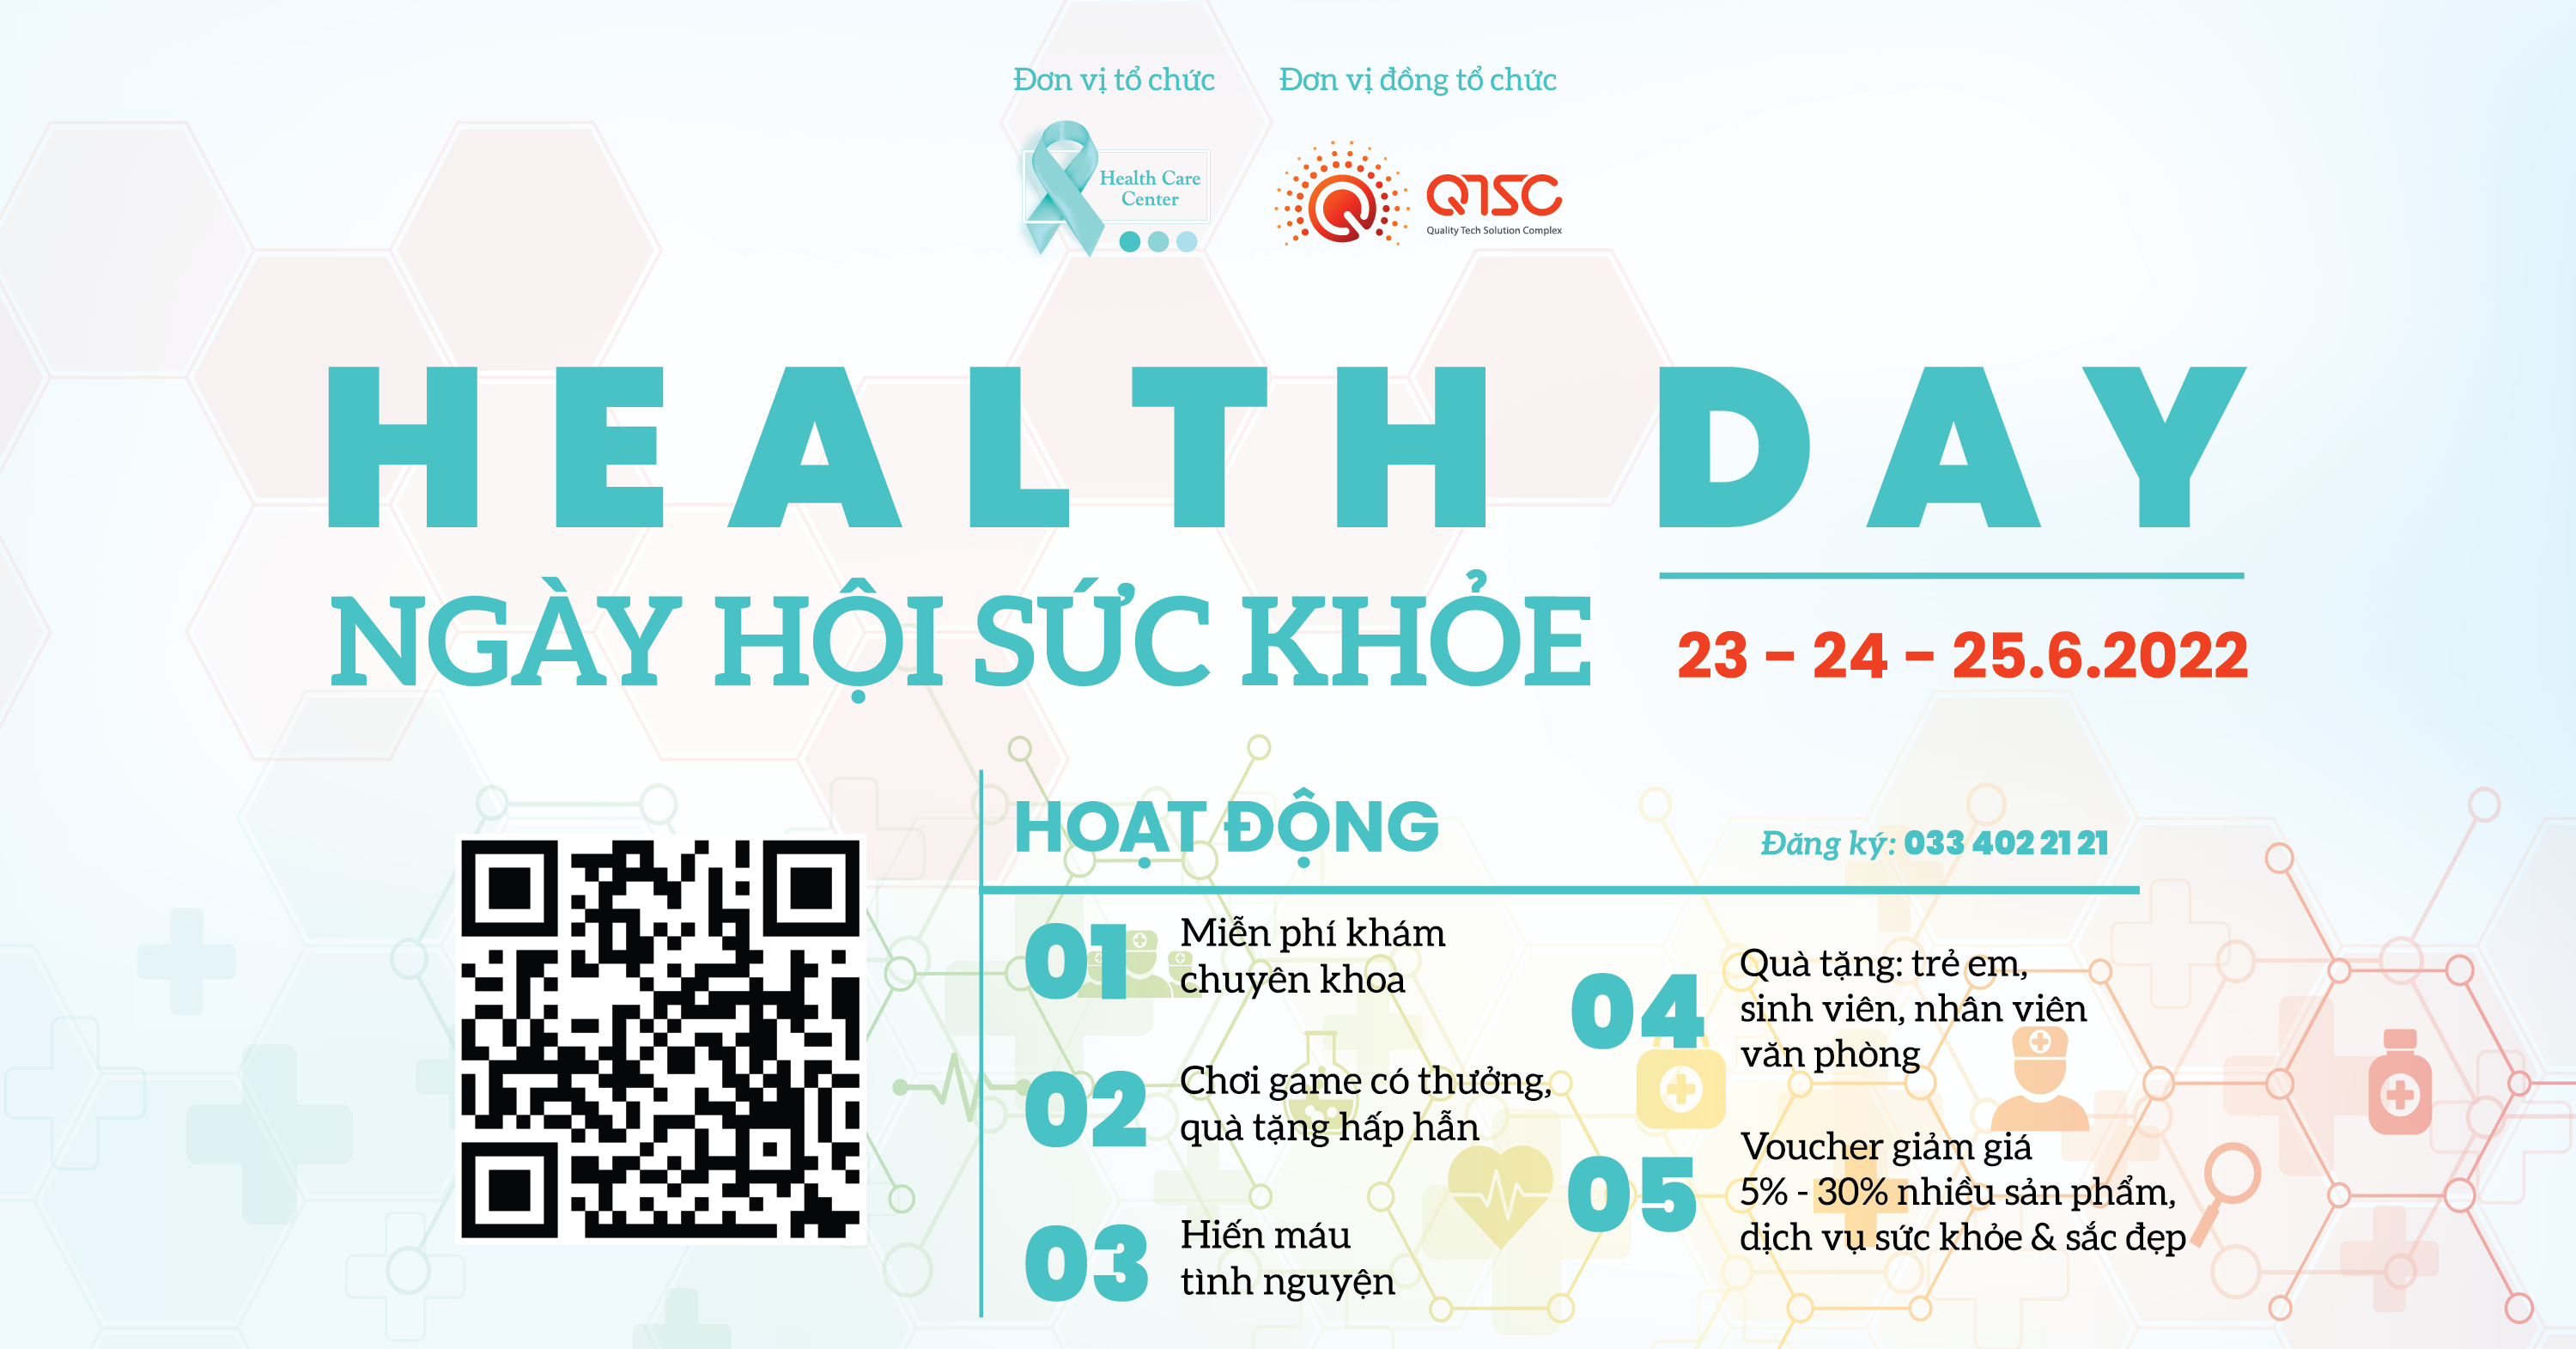 Mời tham gia chương trình “Ngày hội sức khỏe - Health day”